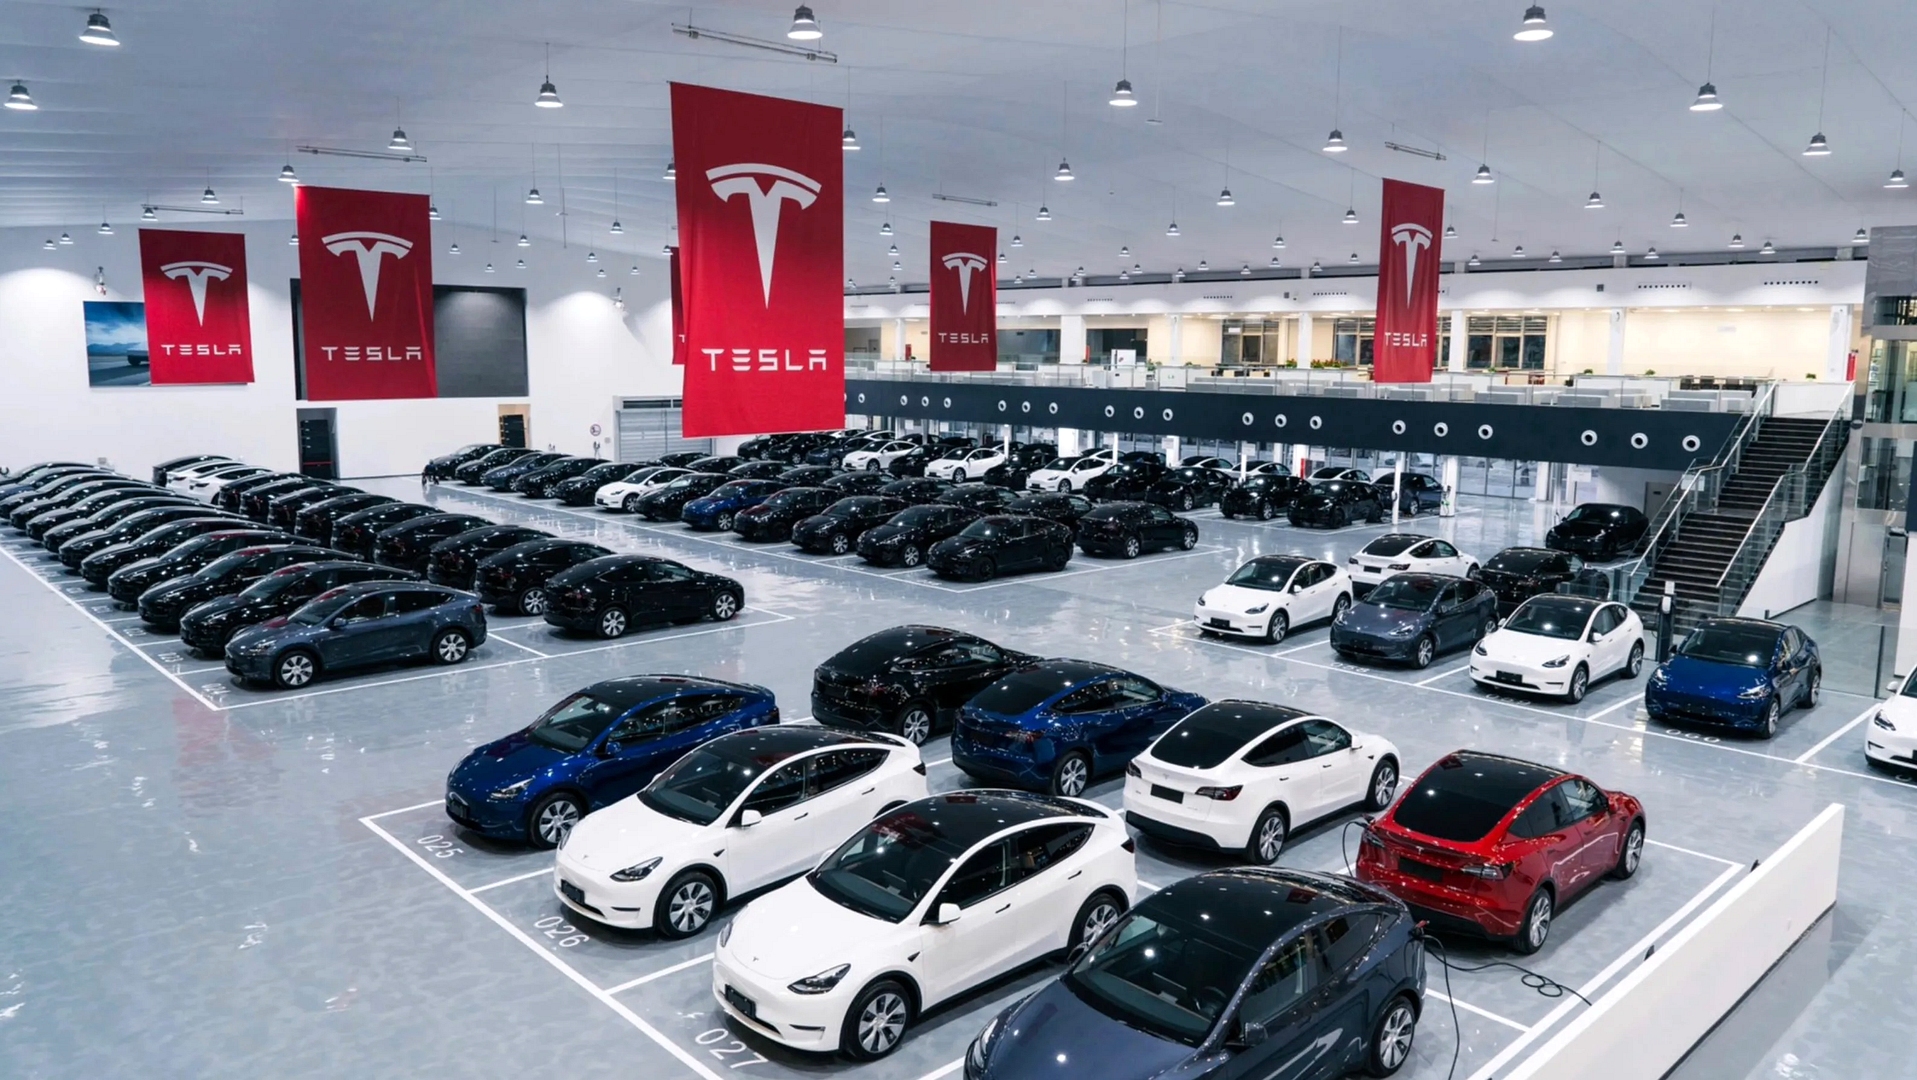 Ce centre de livraison Tesla est certainement le plus grand du monde